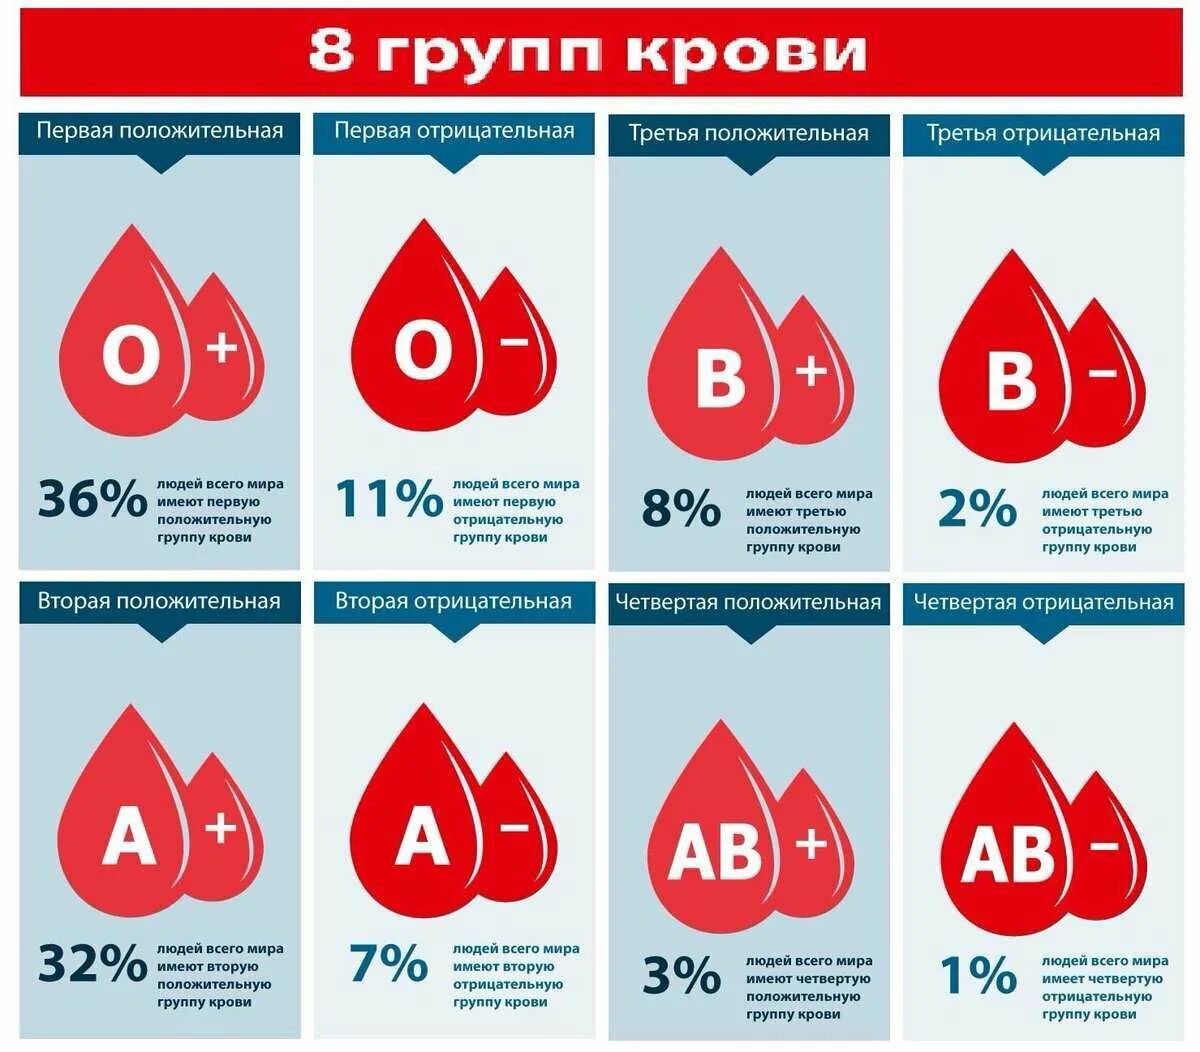 Группа крови. Первая положительная группа крови. Первая отрицательная группа крови. Третья положительная кровь.